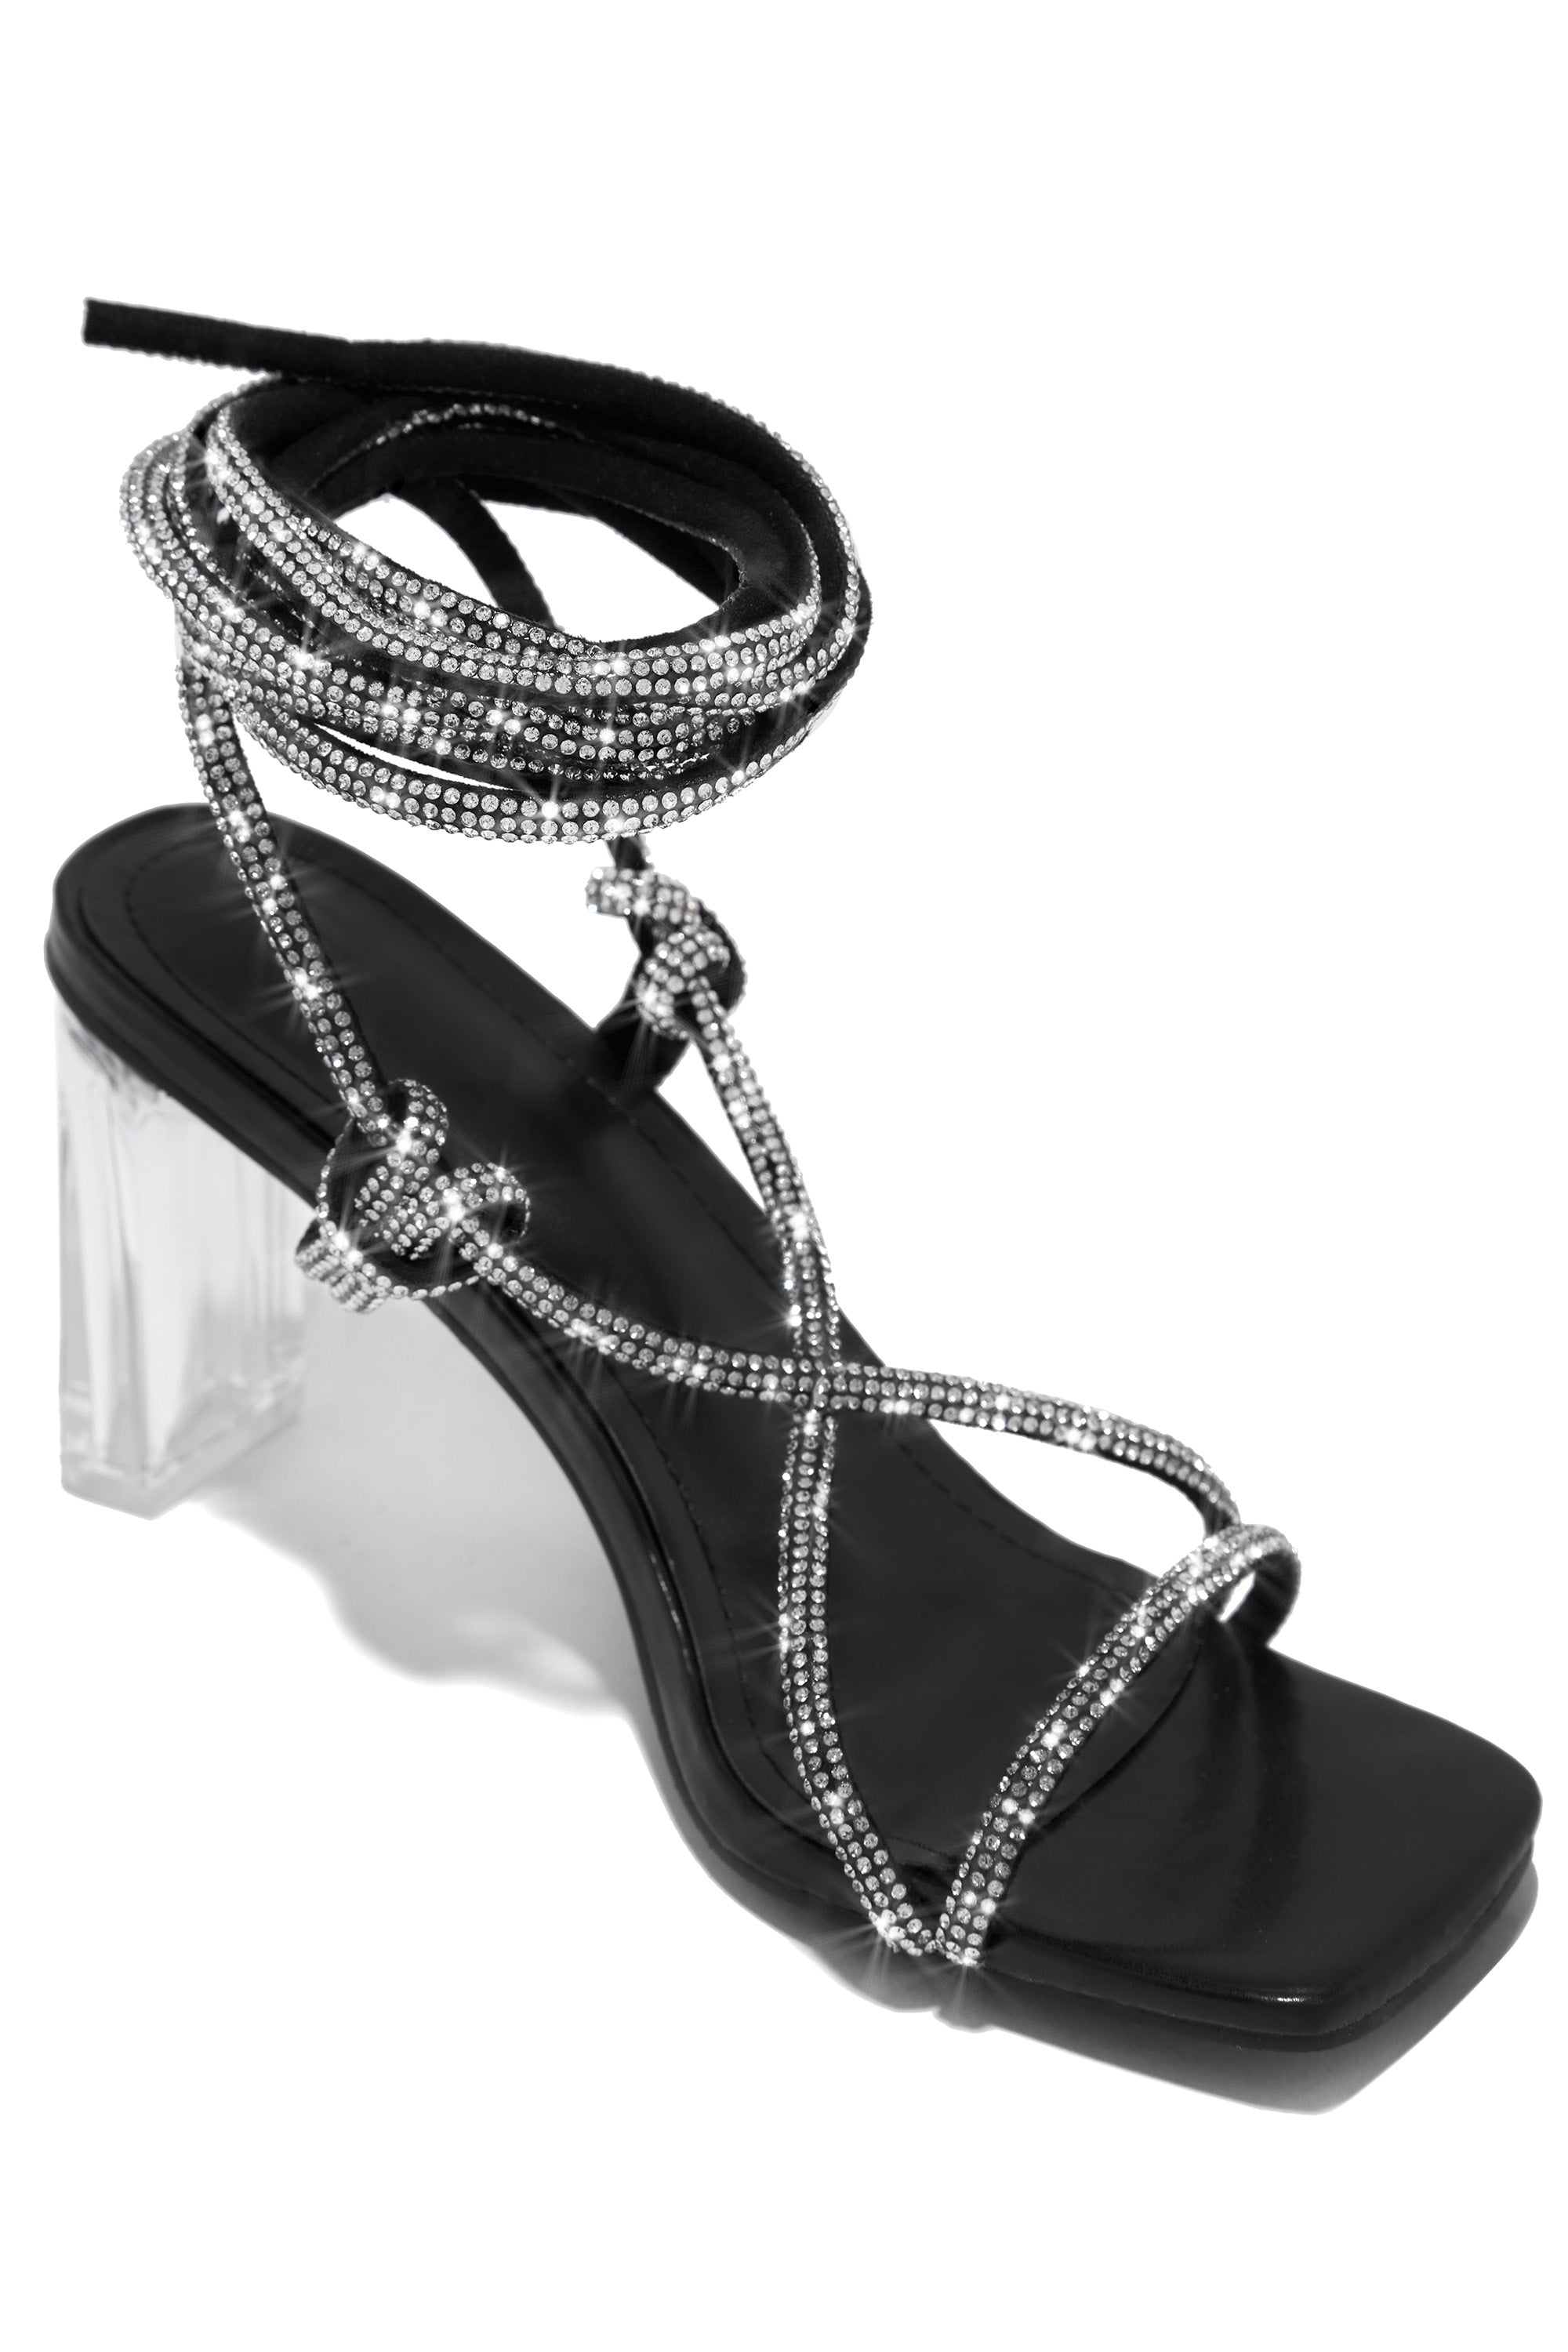 Elisa Lace Up Embellished High Heels - Black